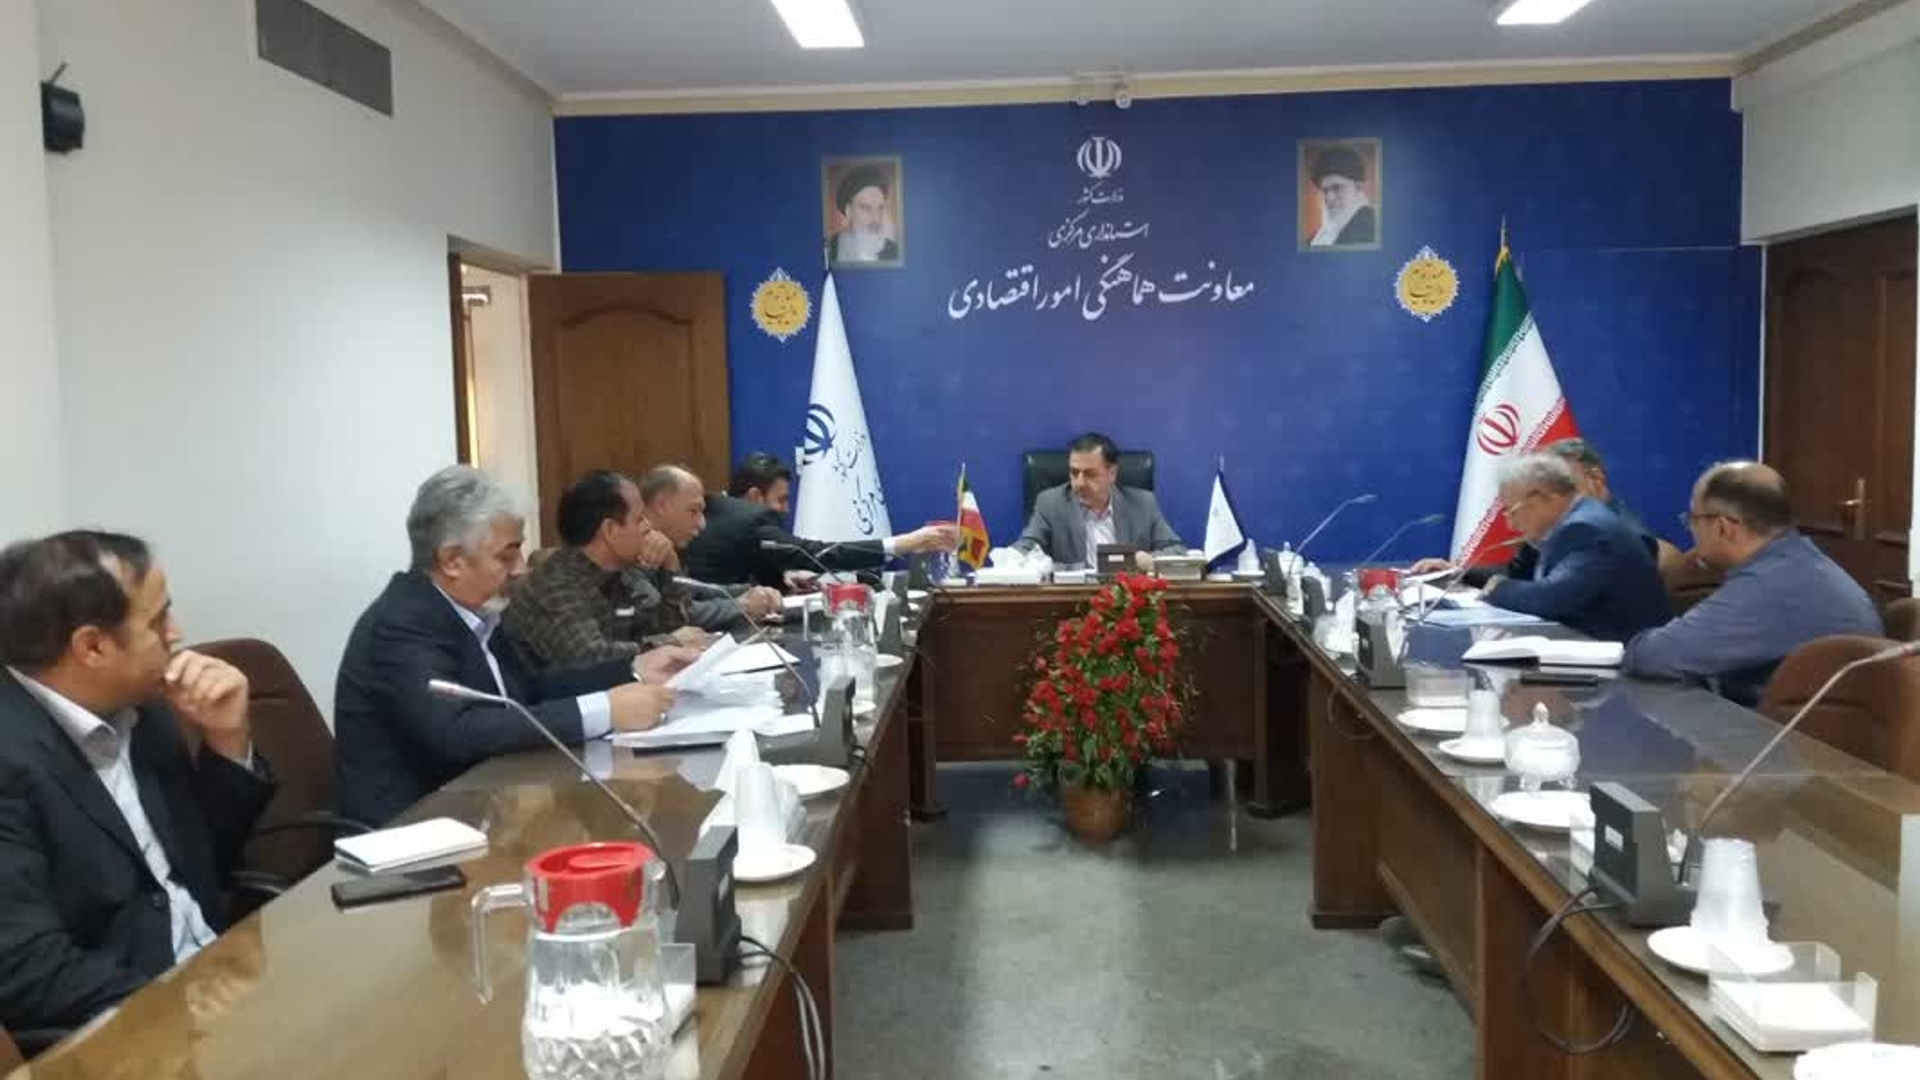 جلسه بررسی مشکلات شرکت گسترش صنایع ونوآوری ایرانیان